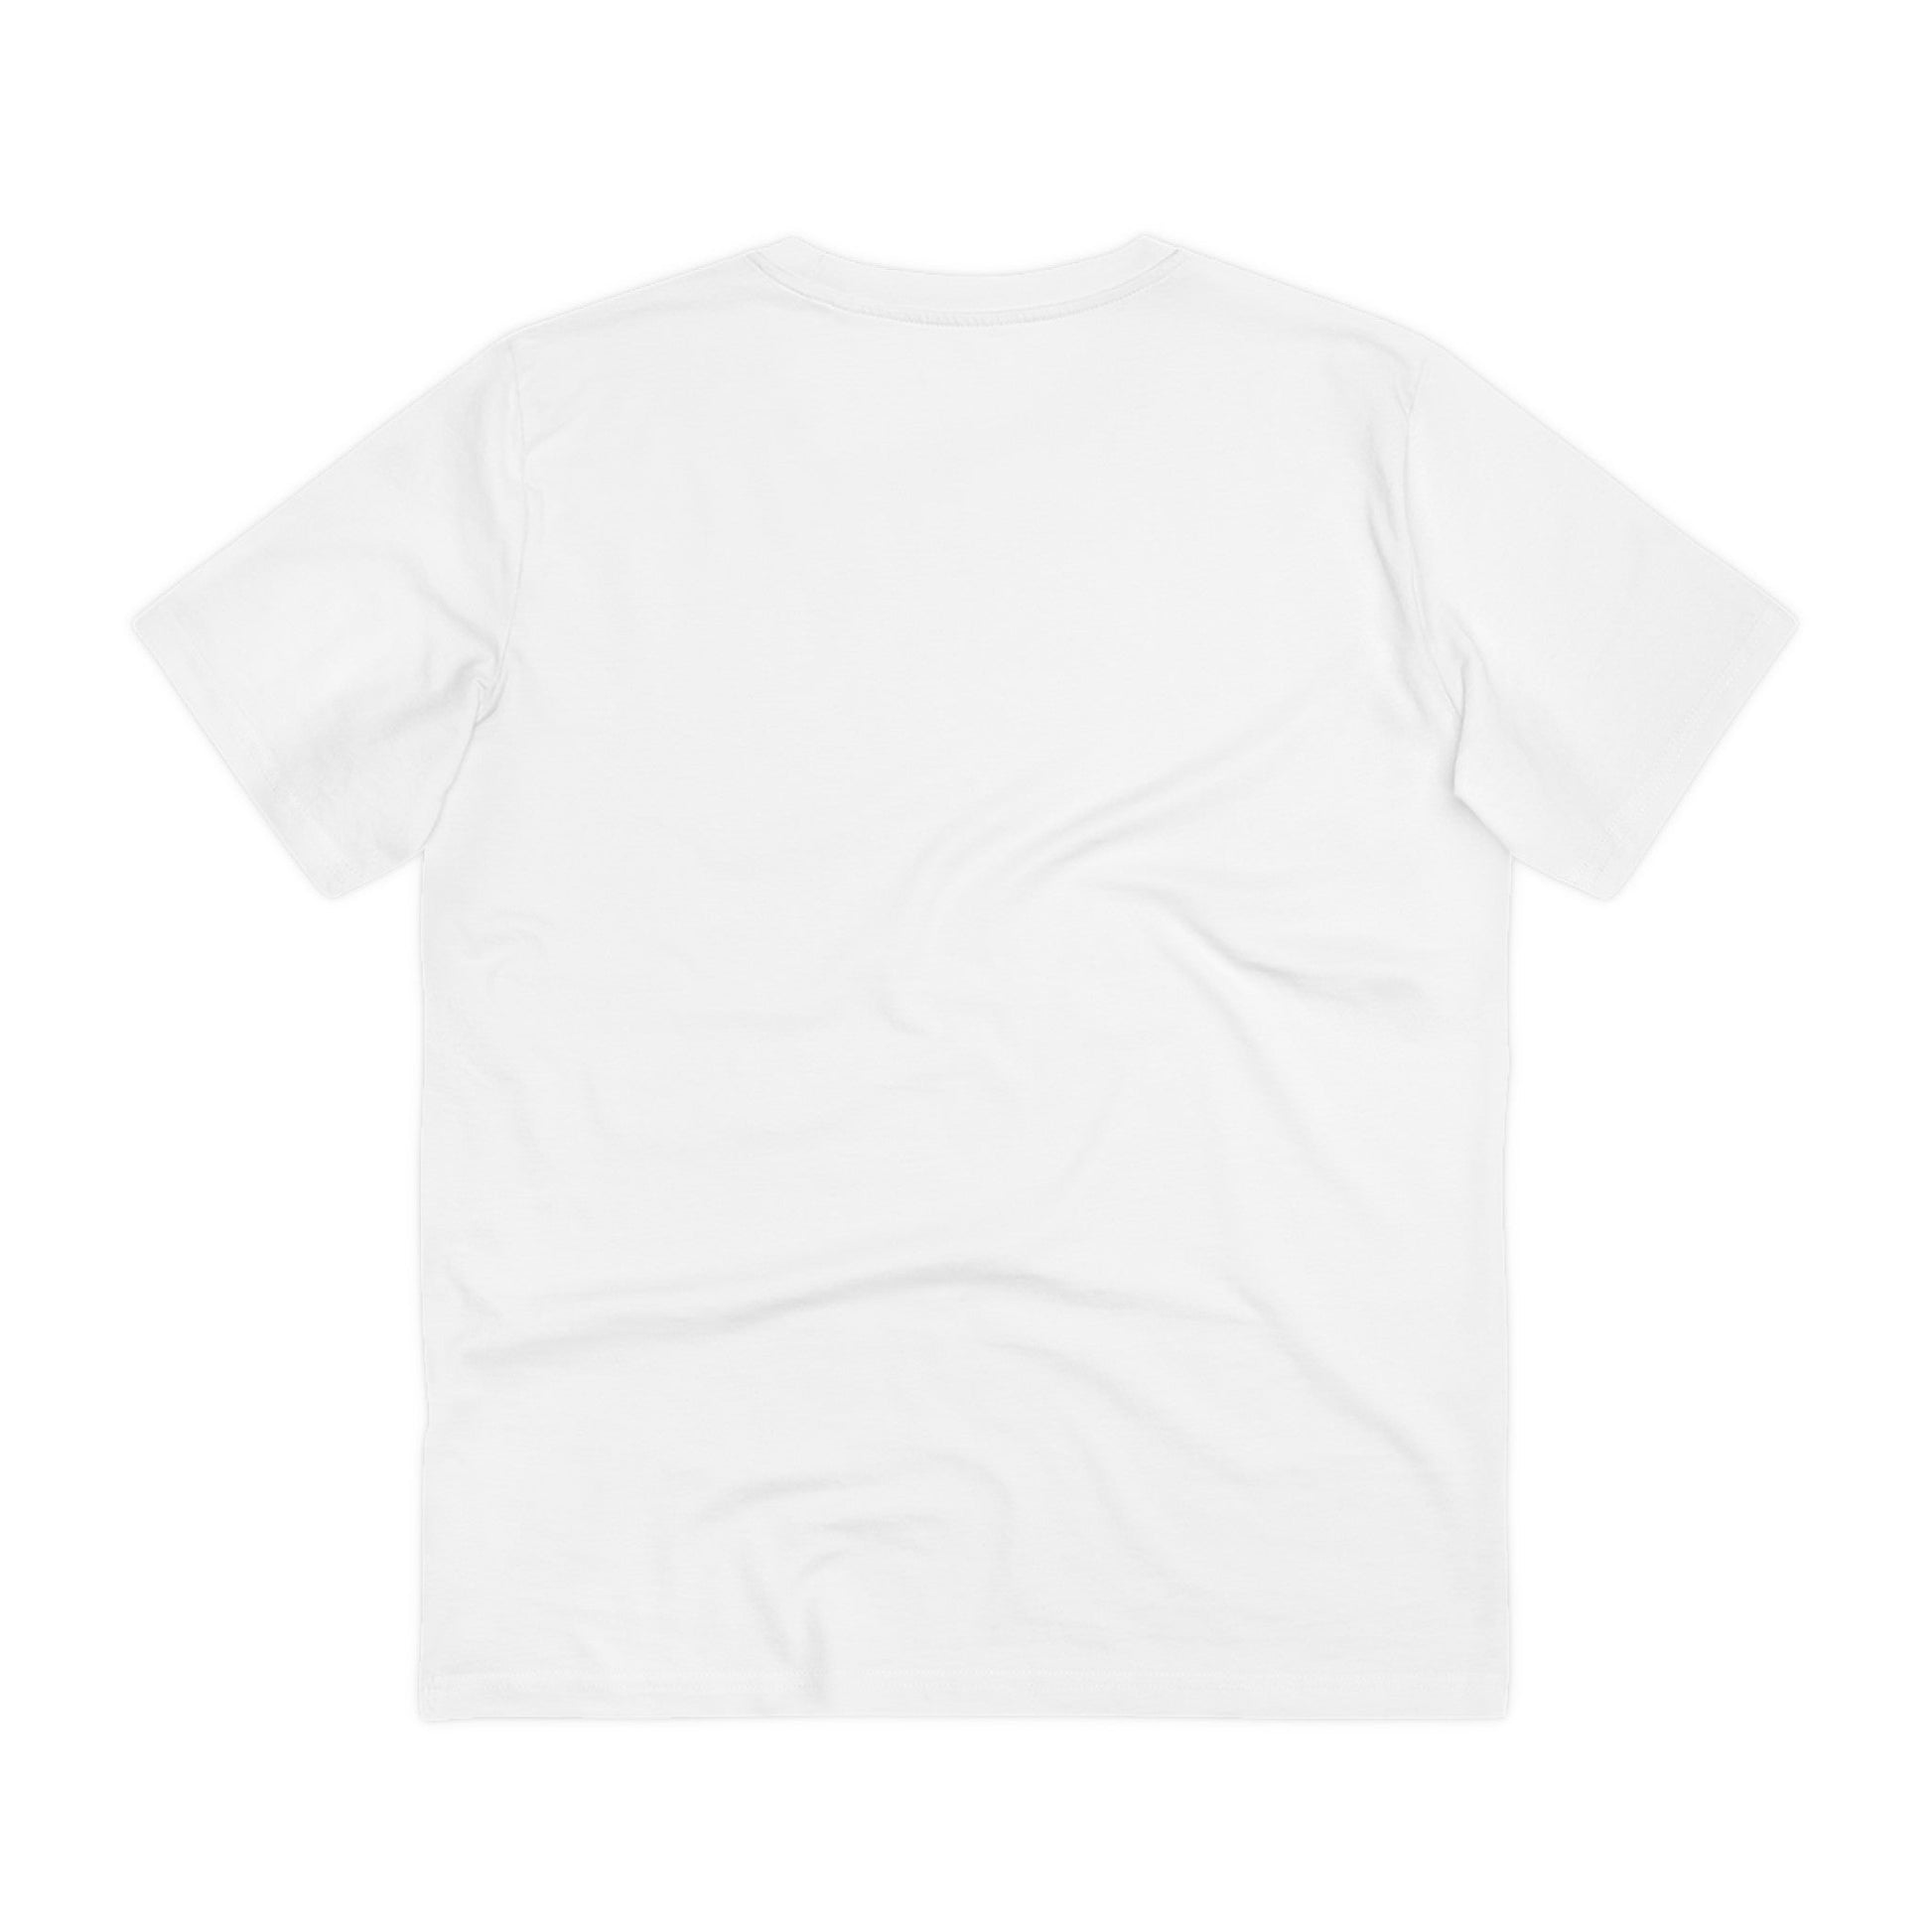 Printify T-Shirt Saufy Unicorn - Unicorn World - Front Design